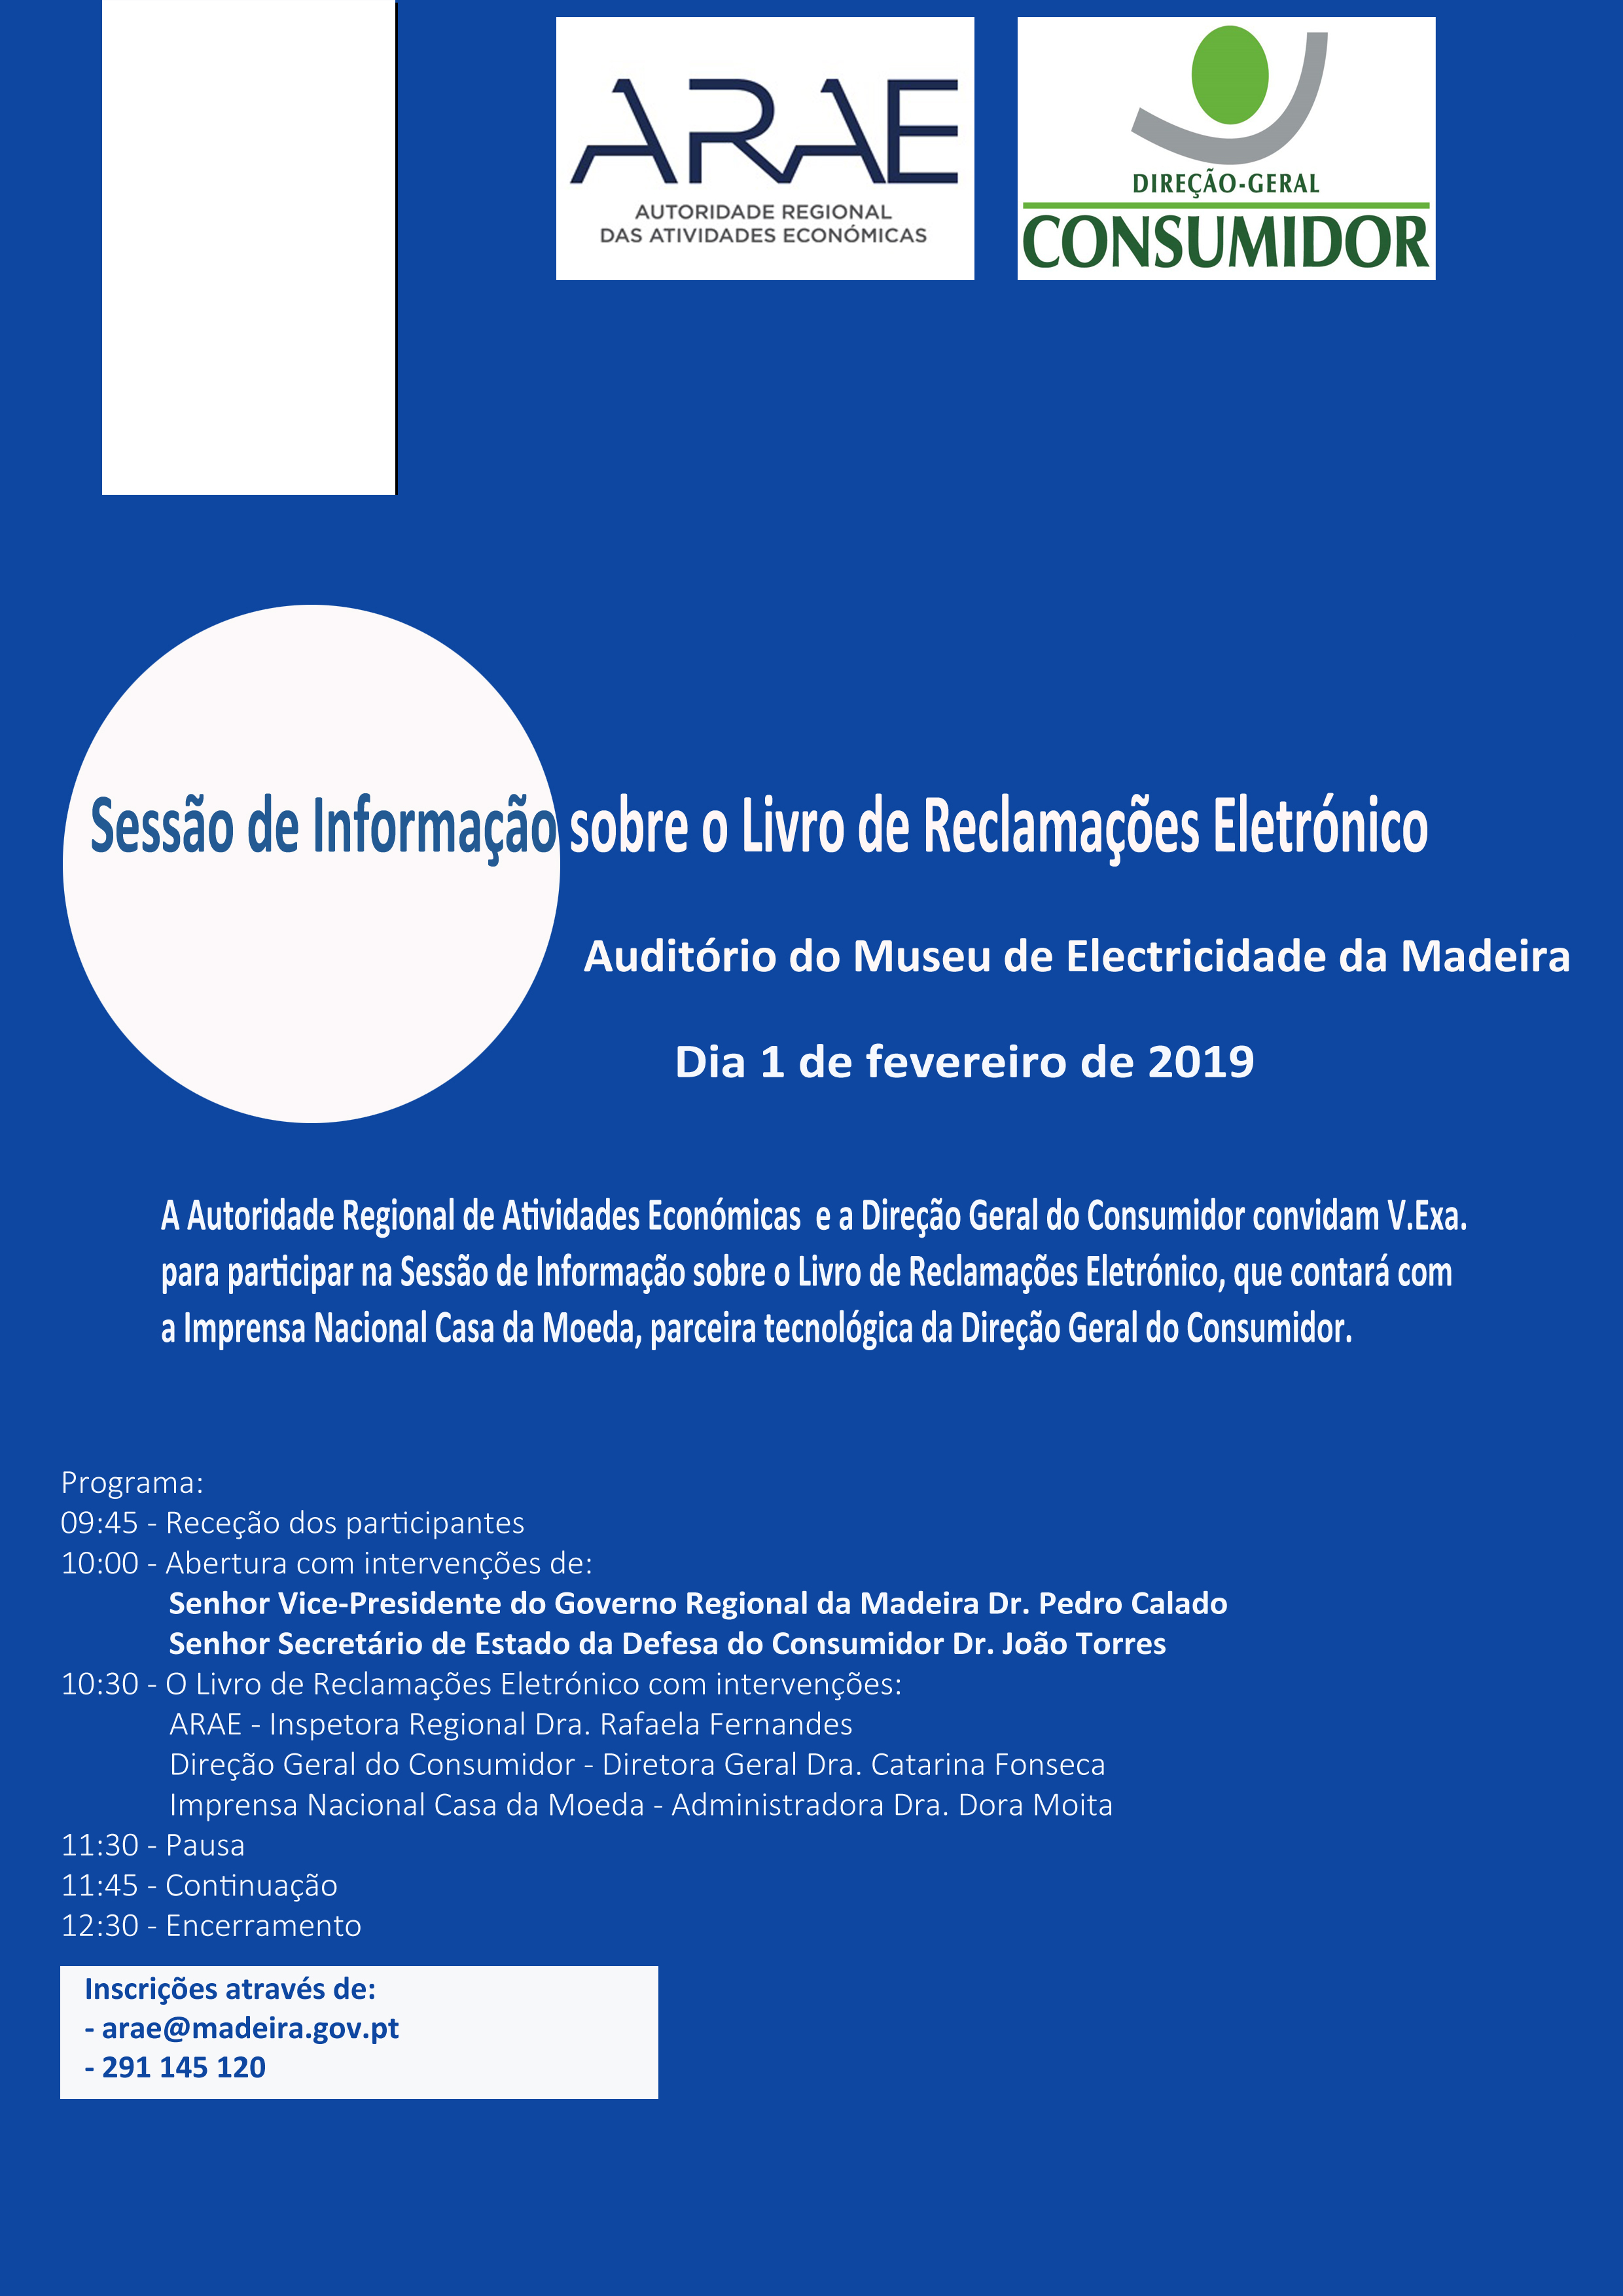 Sessão de Informação sobre o Livro de Reclamações Eletrónico Dia 1 de fevereiro de 2019 - Auditório do Museu de Eletricidade da Madeira 